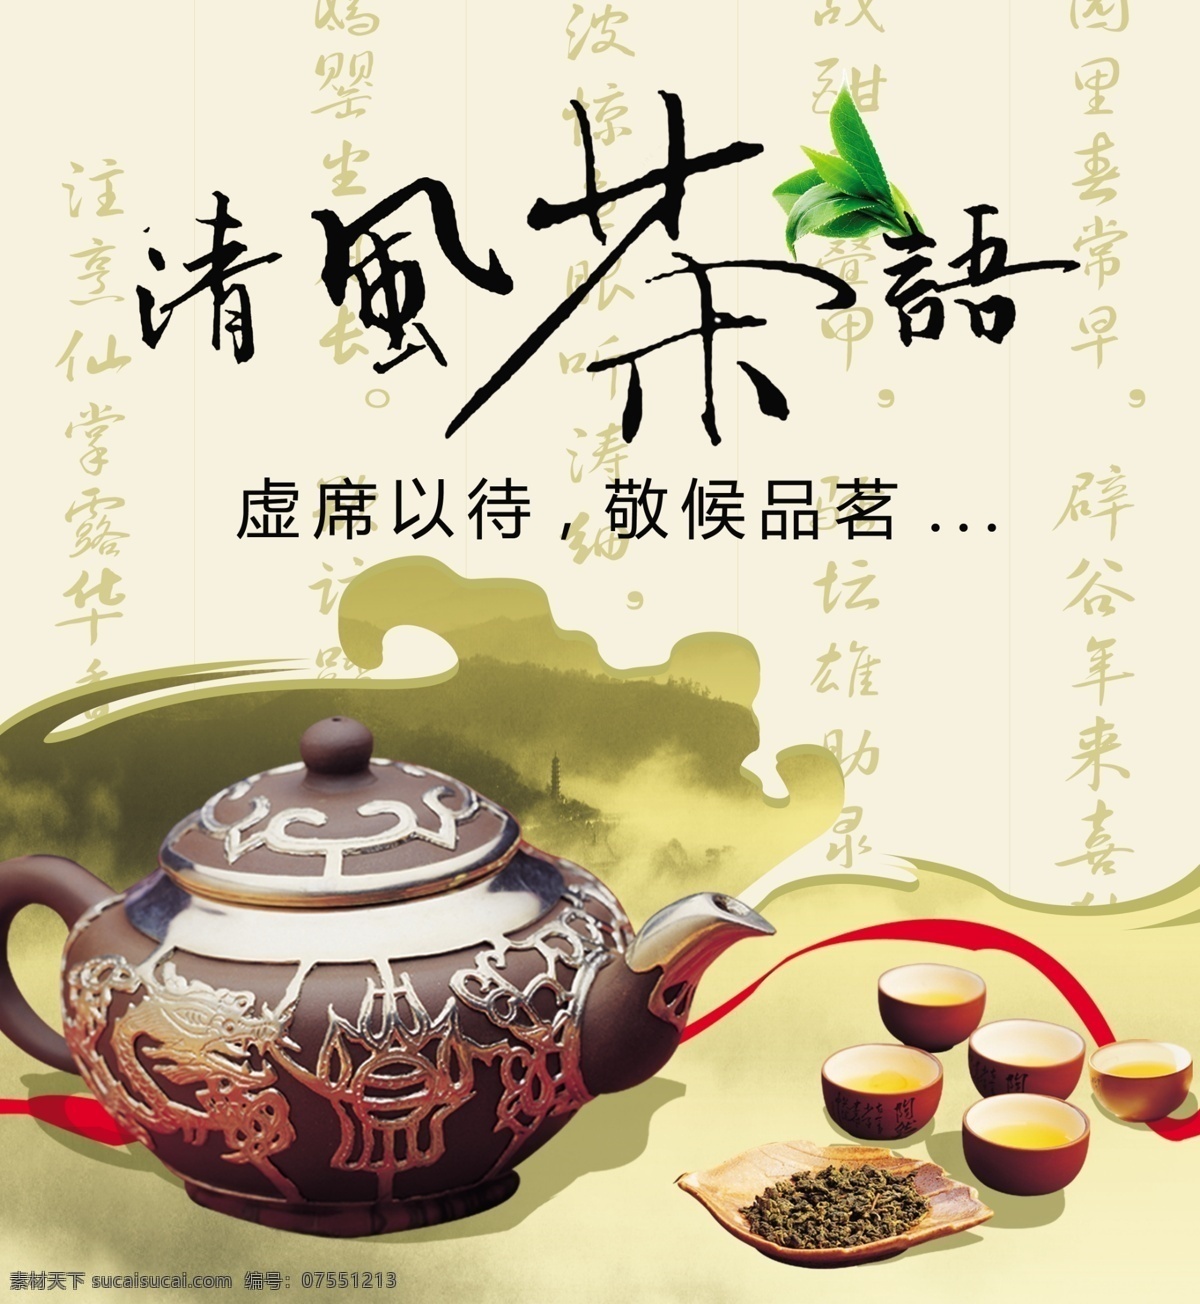 茶艺 茶具 品水 背景 国内广告设计 广告设计模板 源文件